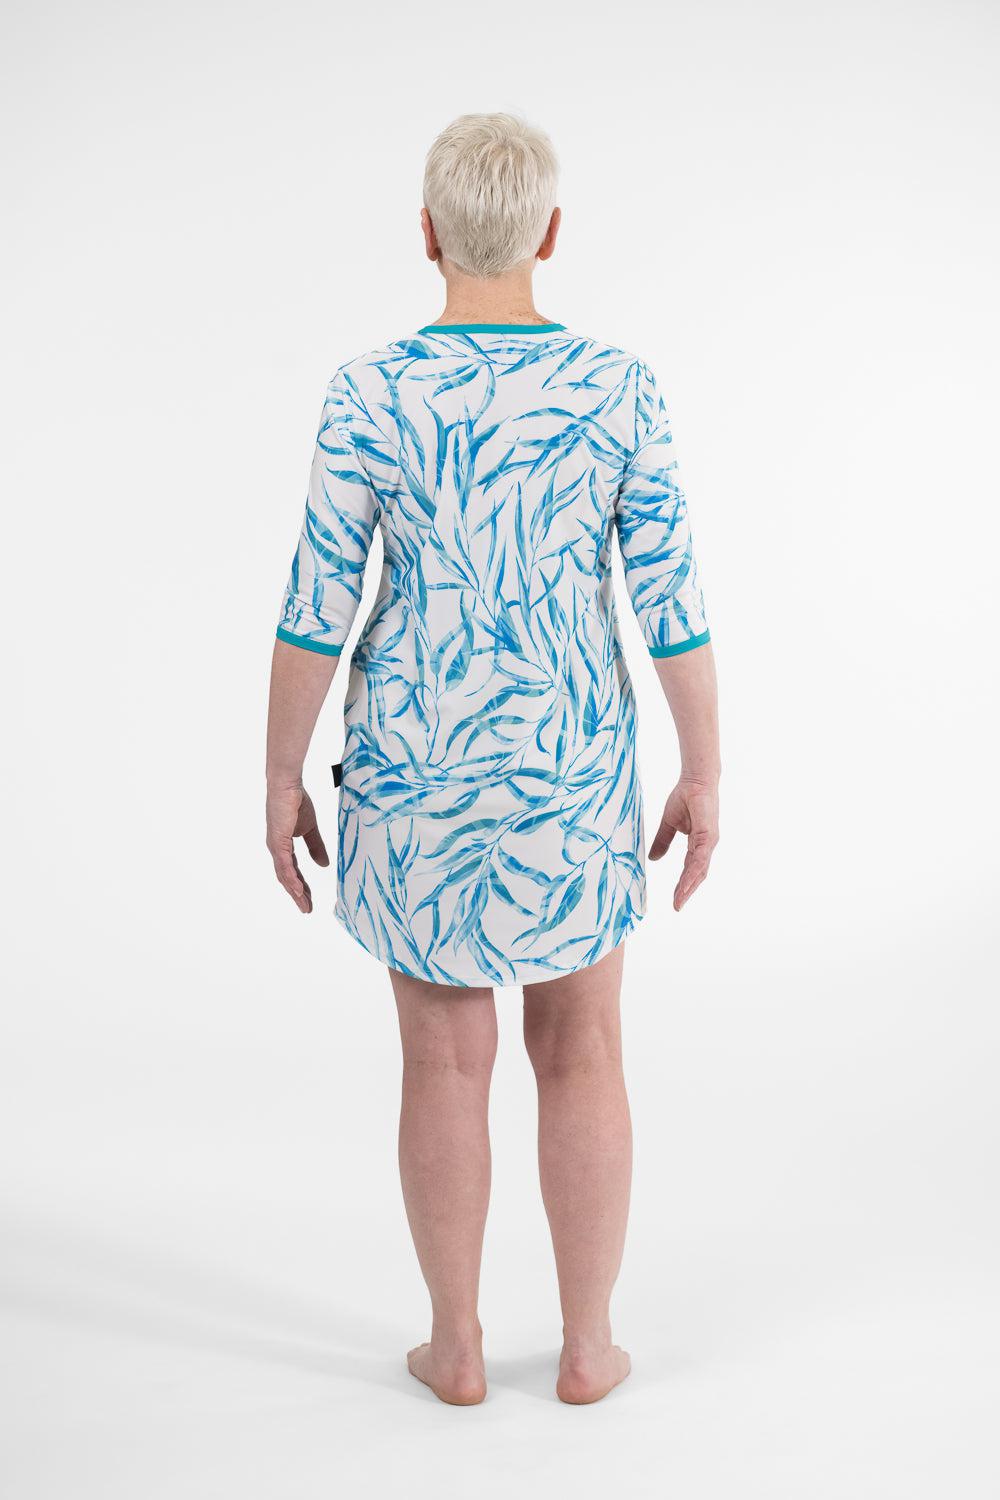 A-Line Rashie Dress blue gum print